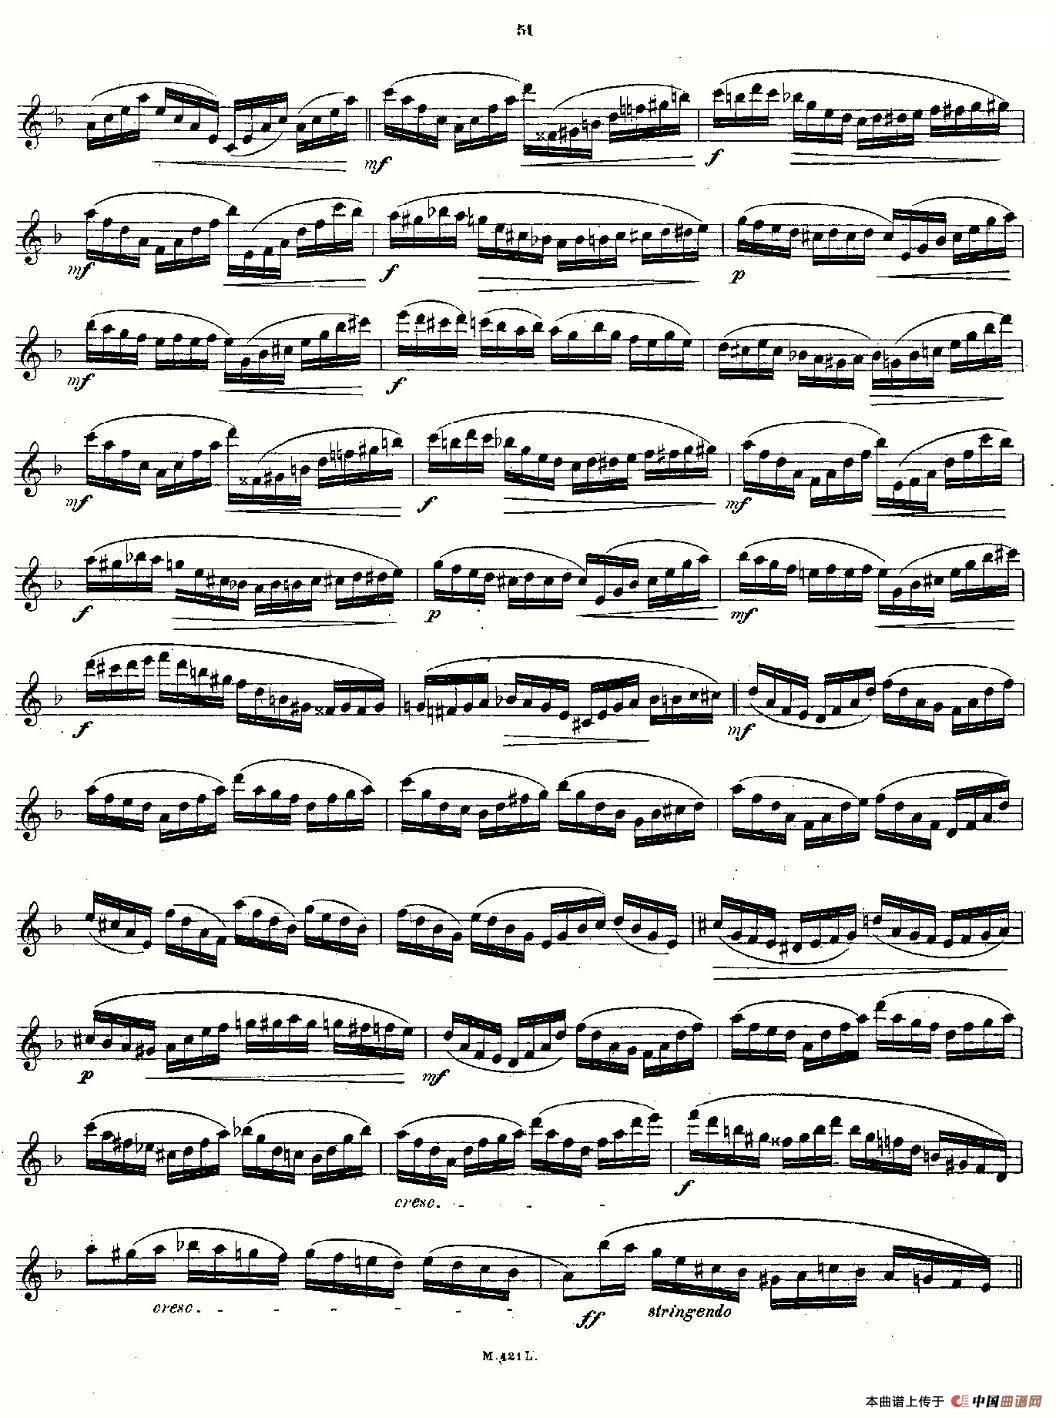 24首长笛练习曲 Op.15 之21—24